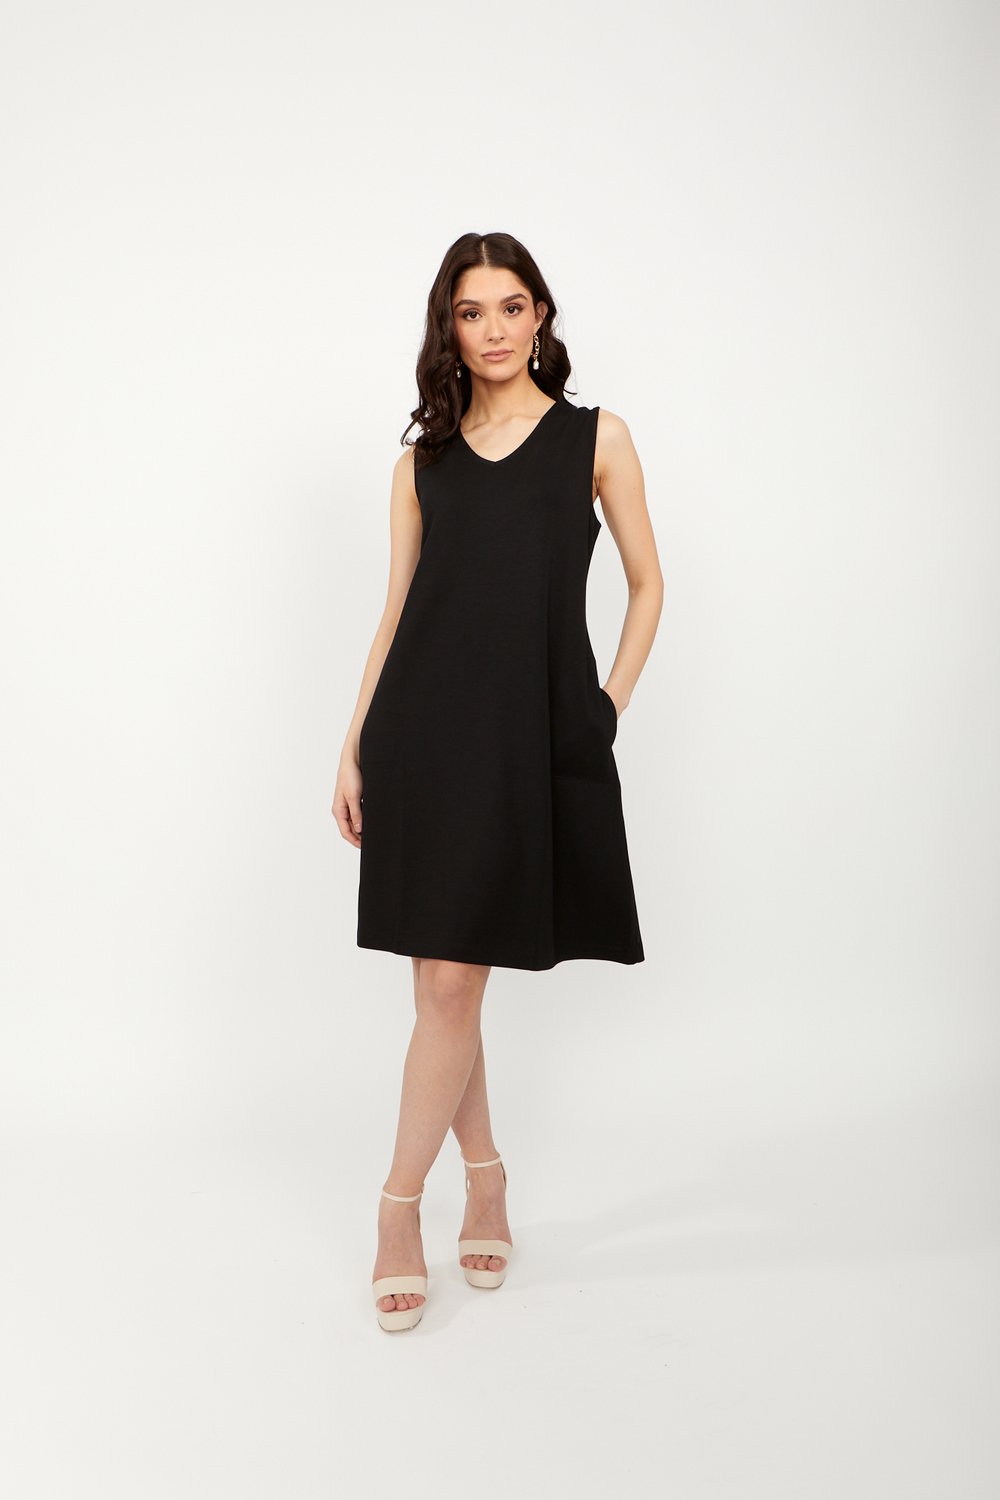 Sleeveless Pleated Mini Dress Style 24703. Black